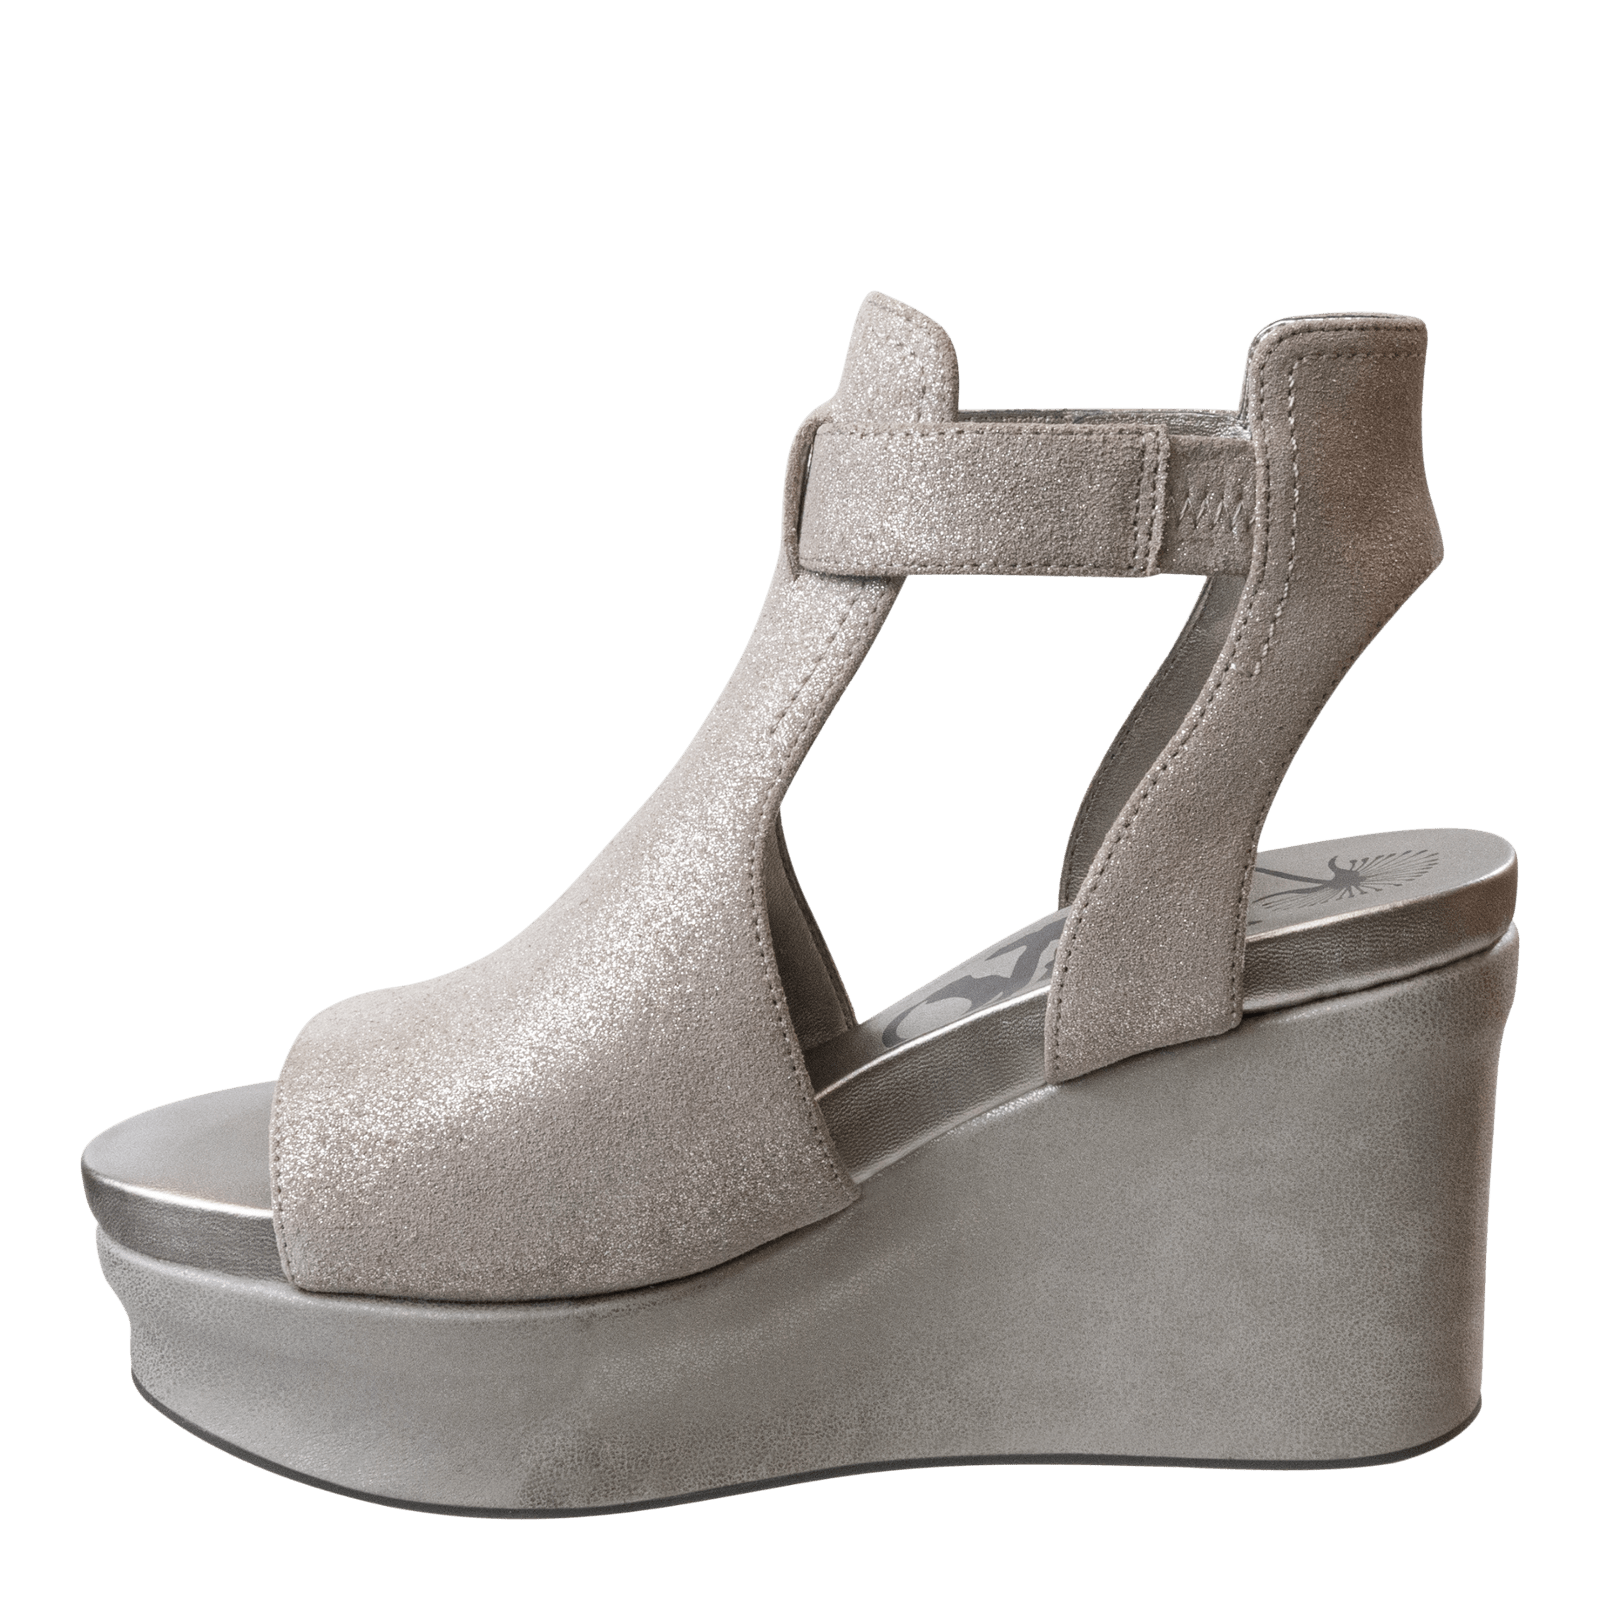 OTBT - MOJO in SILVER Wedge Sandals WOMEN FOOTWEAR OTBT 